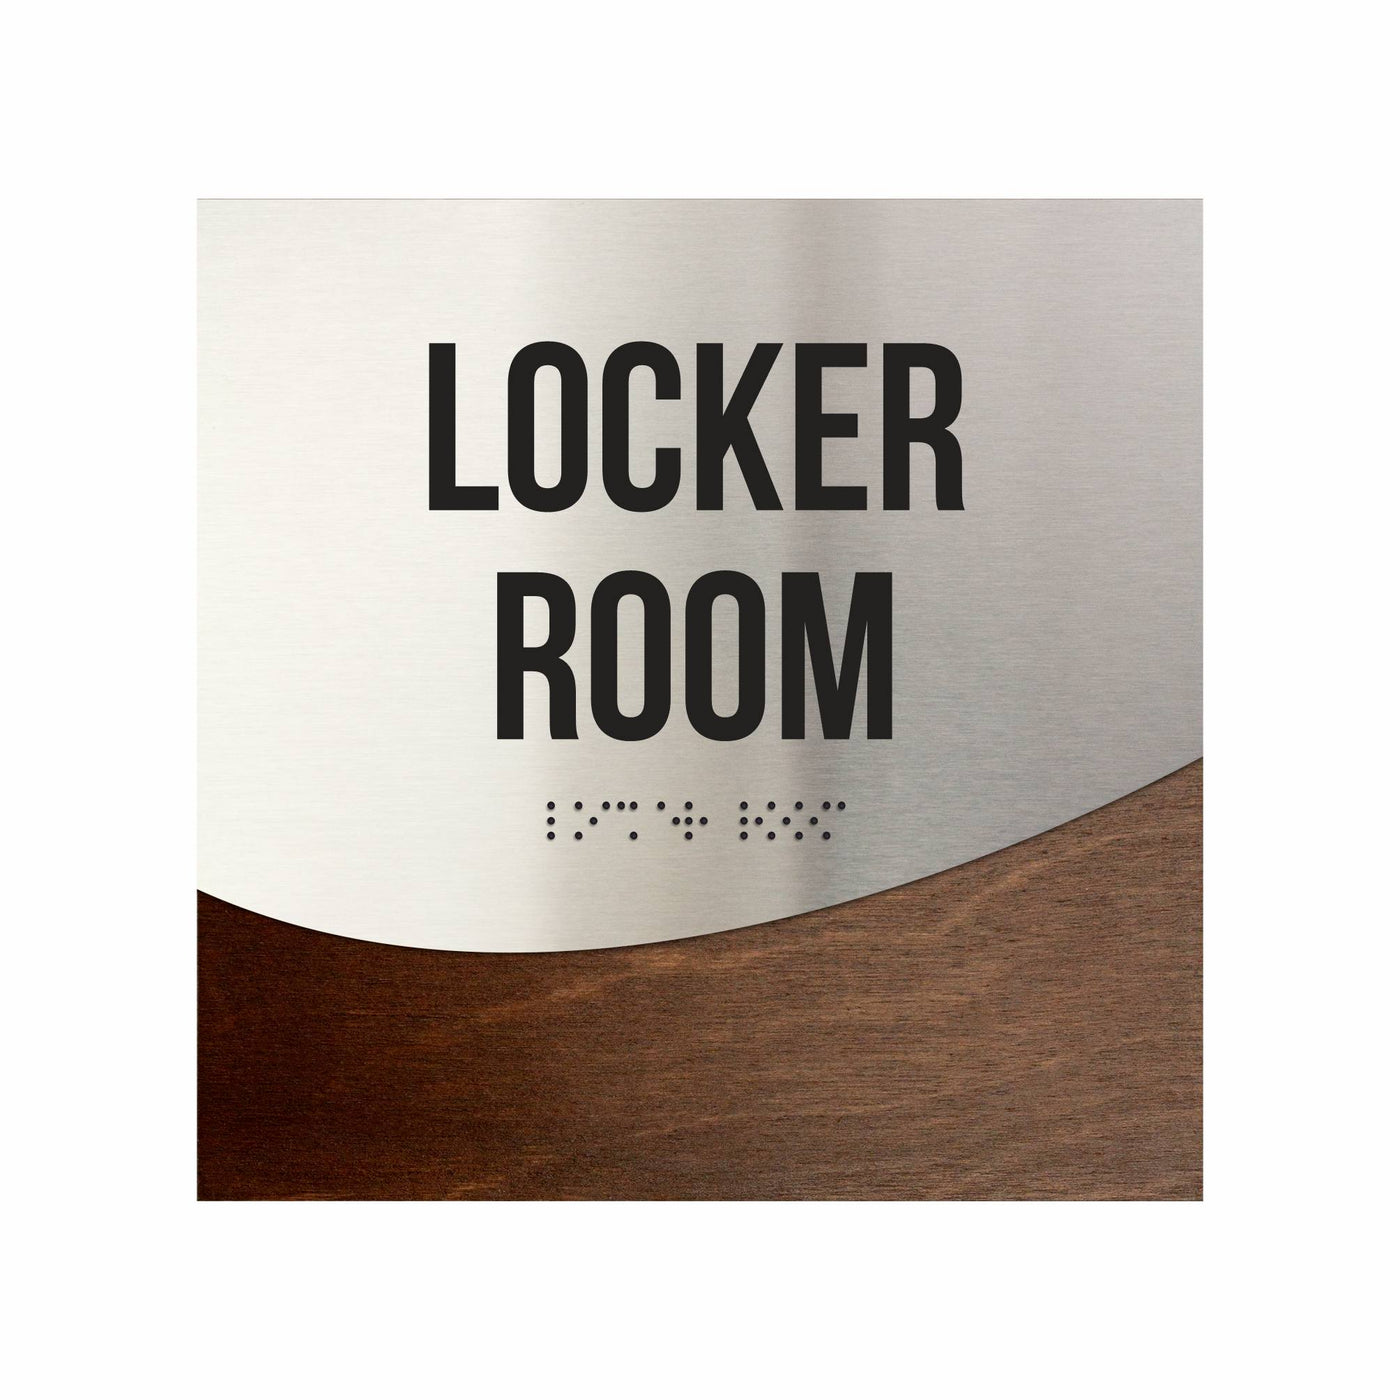 Locker Room Door Sign - Stainless Steel & Wood Door Plate "Jure" Design